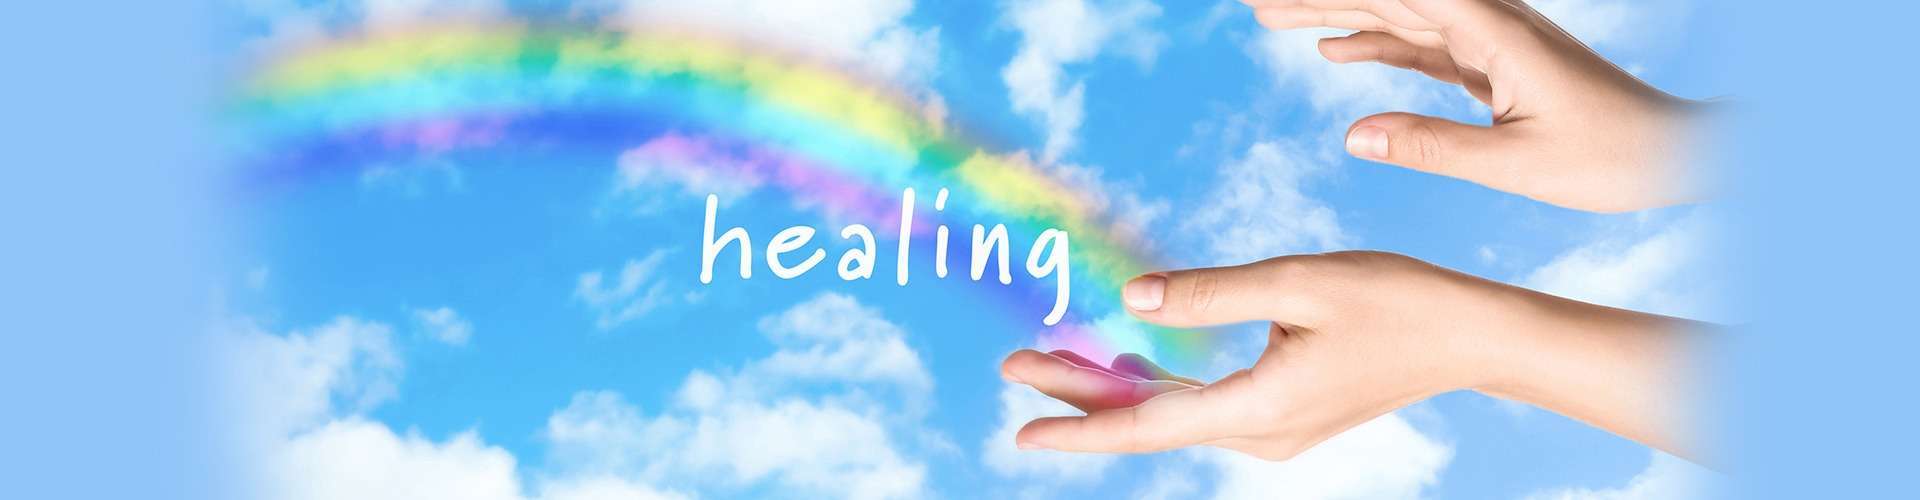 healing for everyone